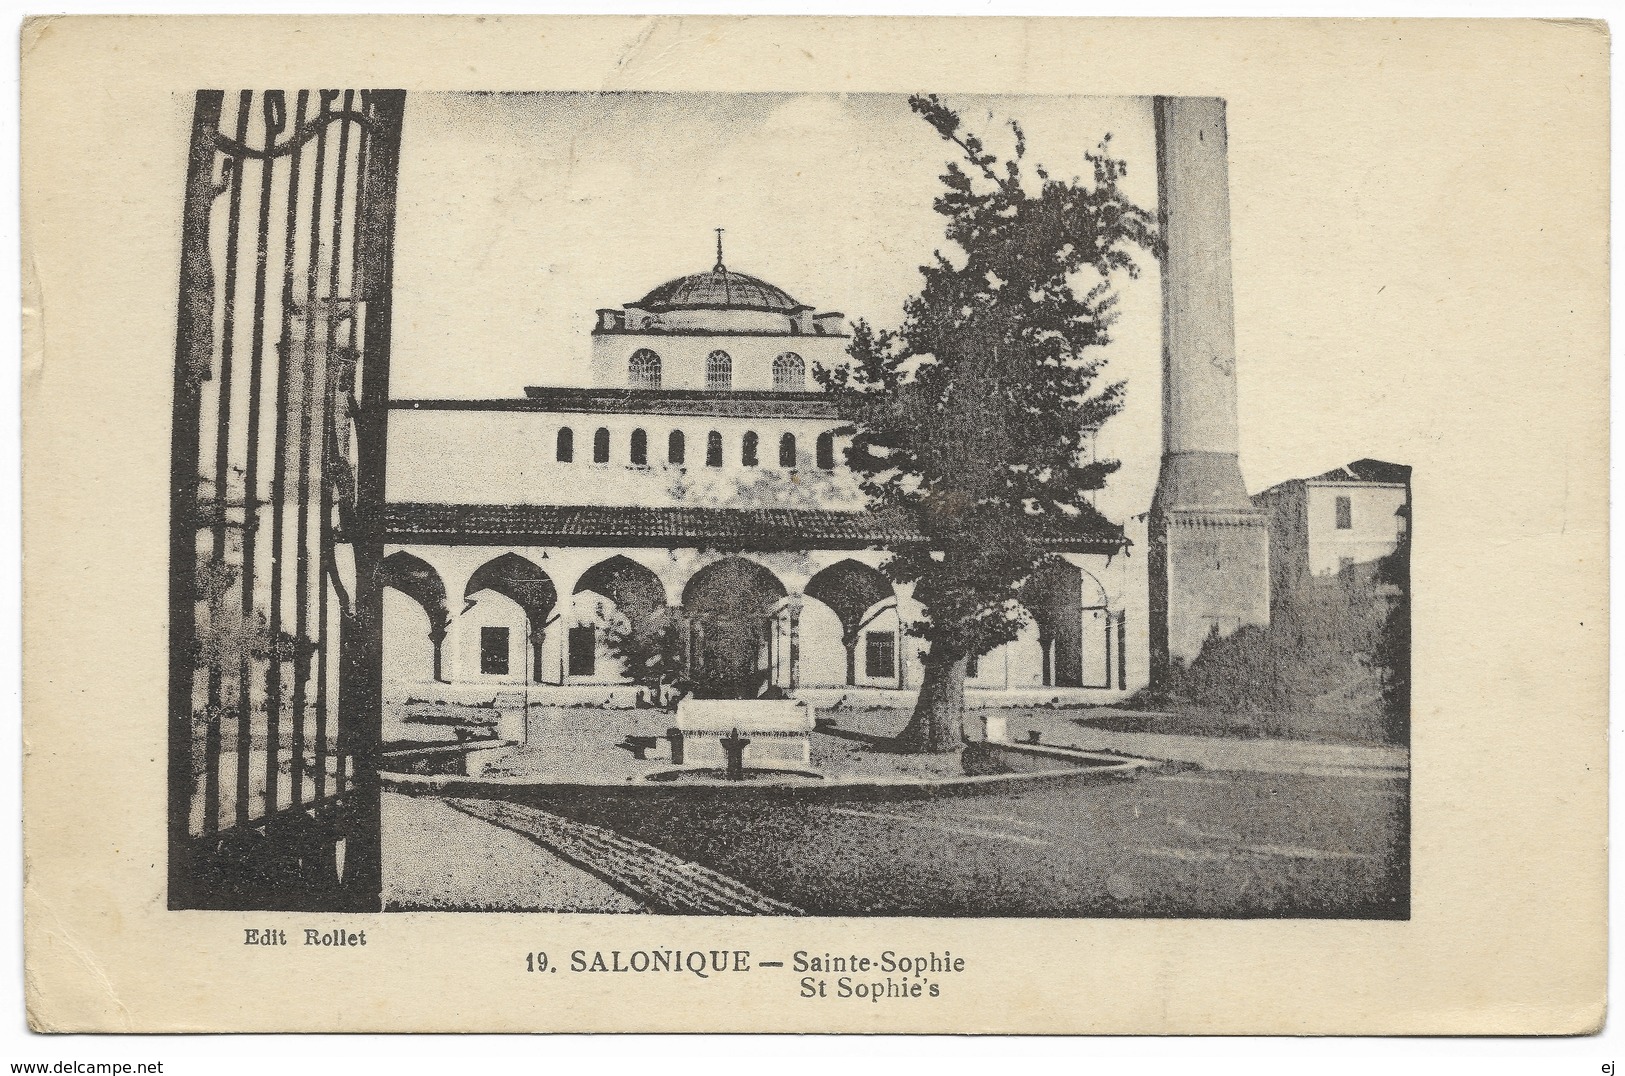 Salonique Sainte-Sophie - Salonica St Sophie's - Unused - Rollet B&G Lyon - Greece